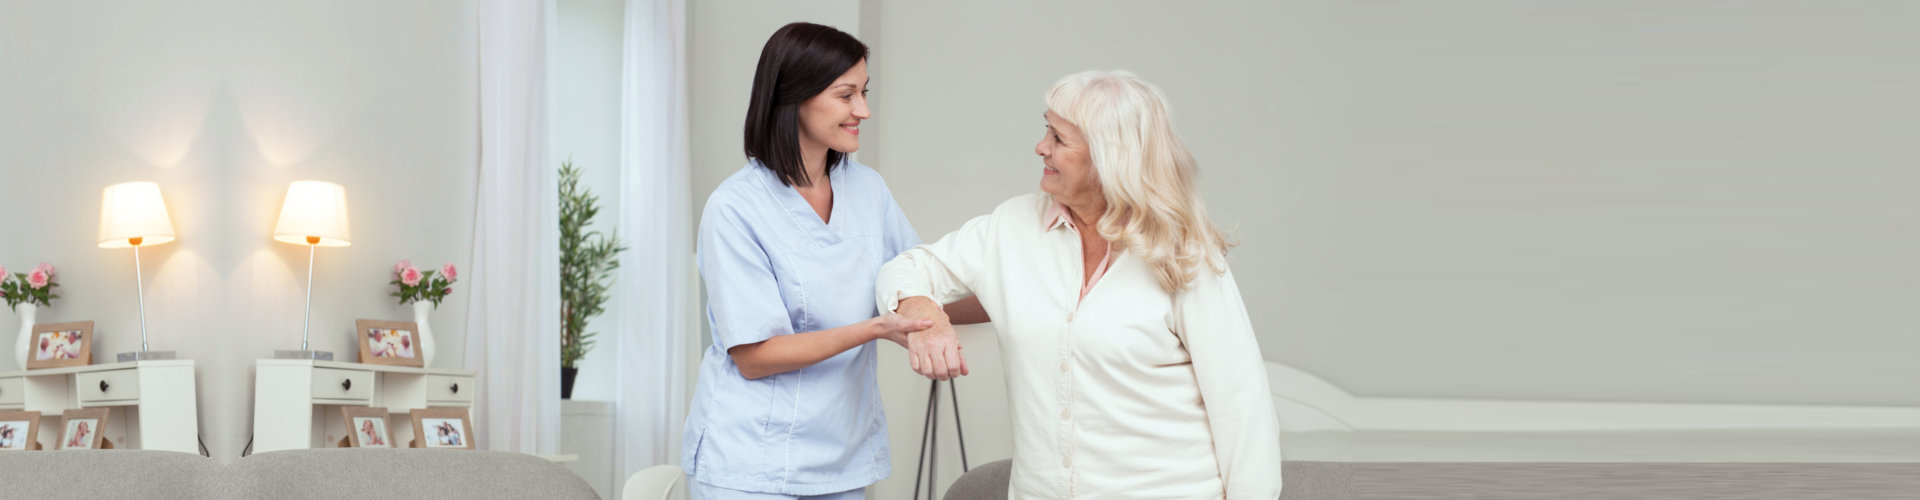 caregiver assisting the elderly